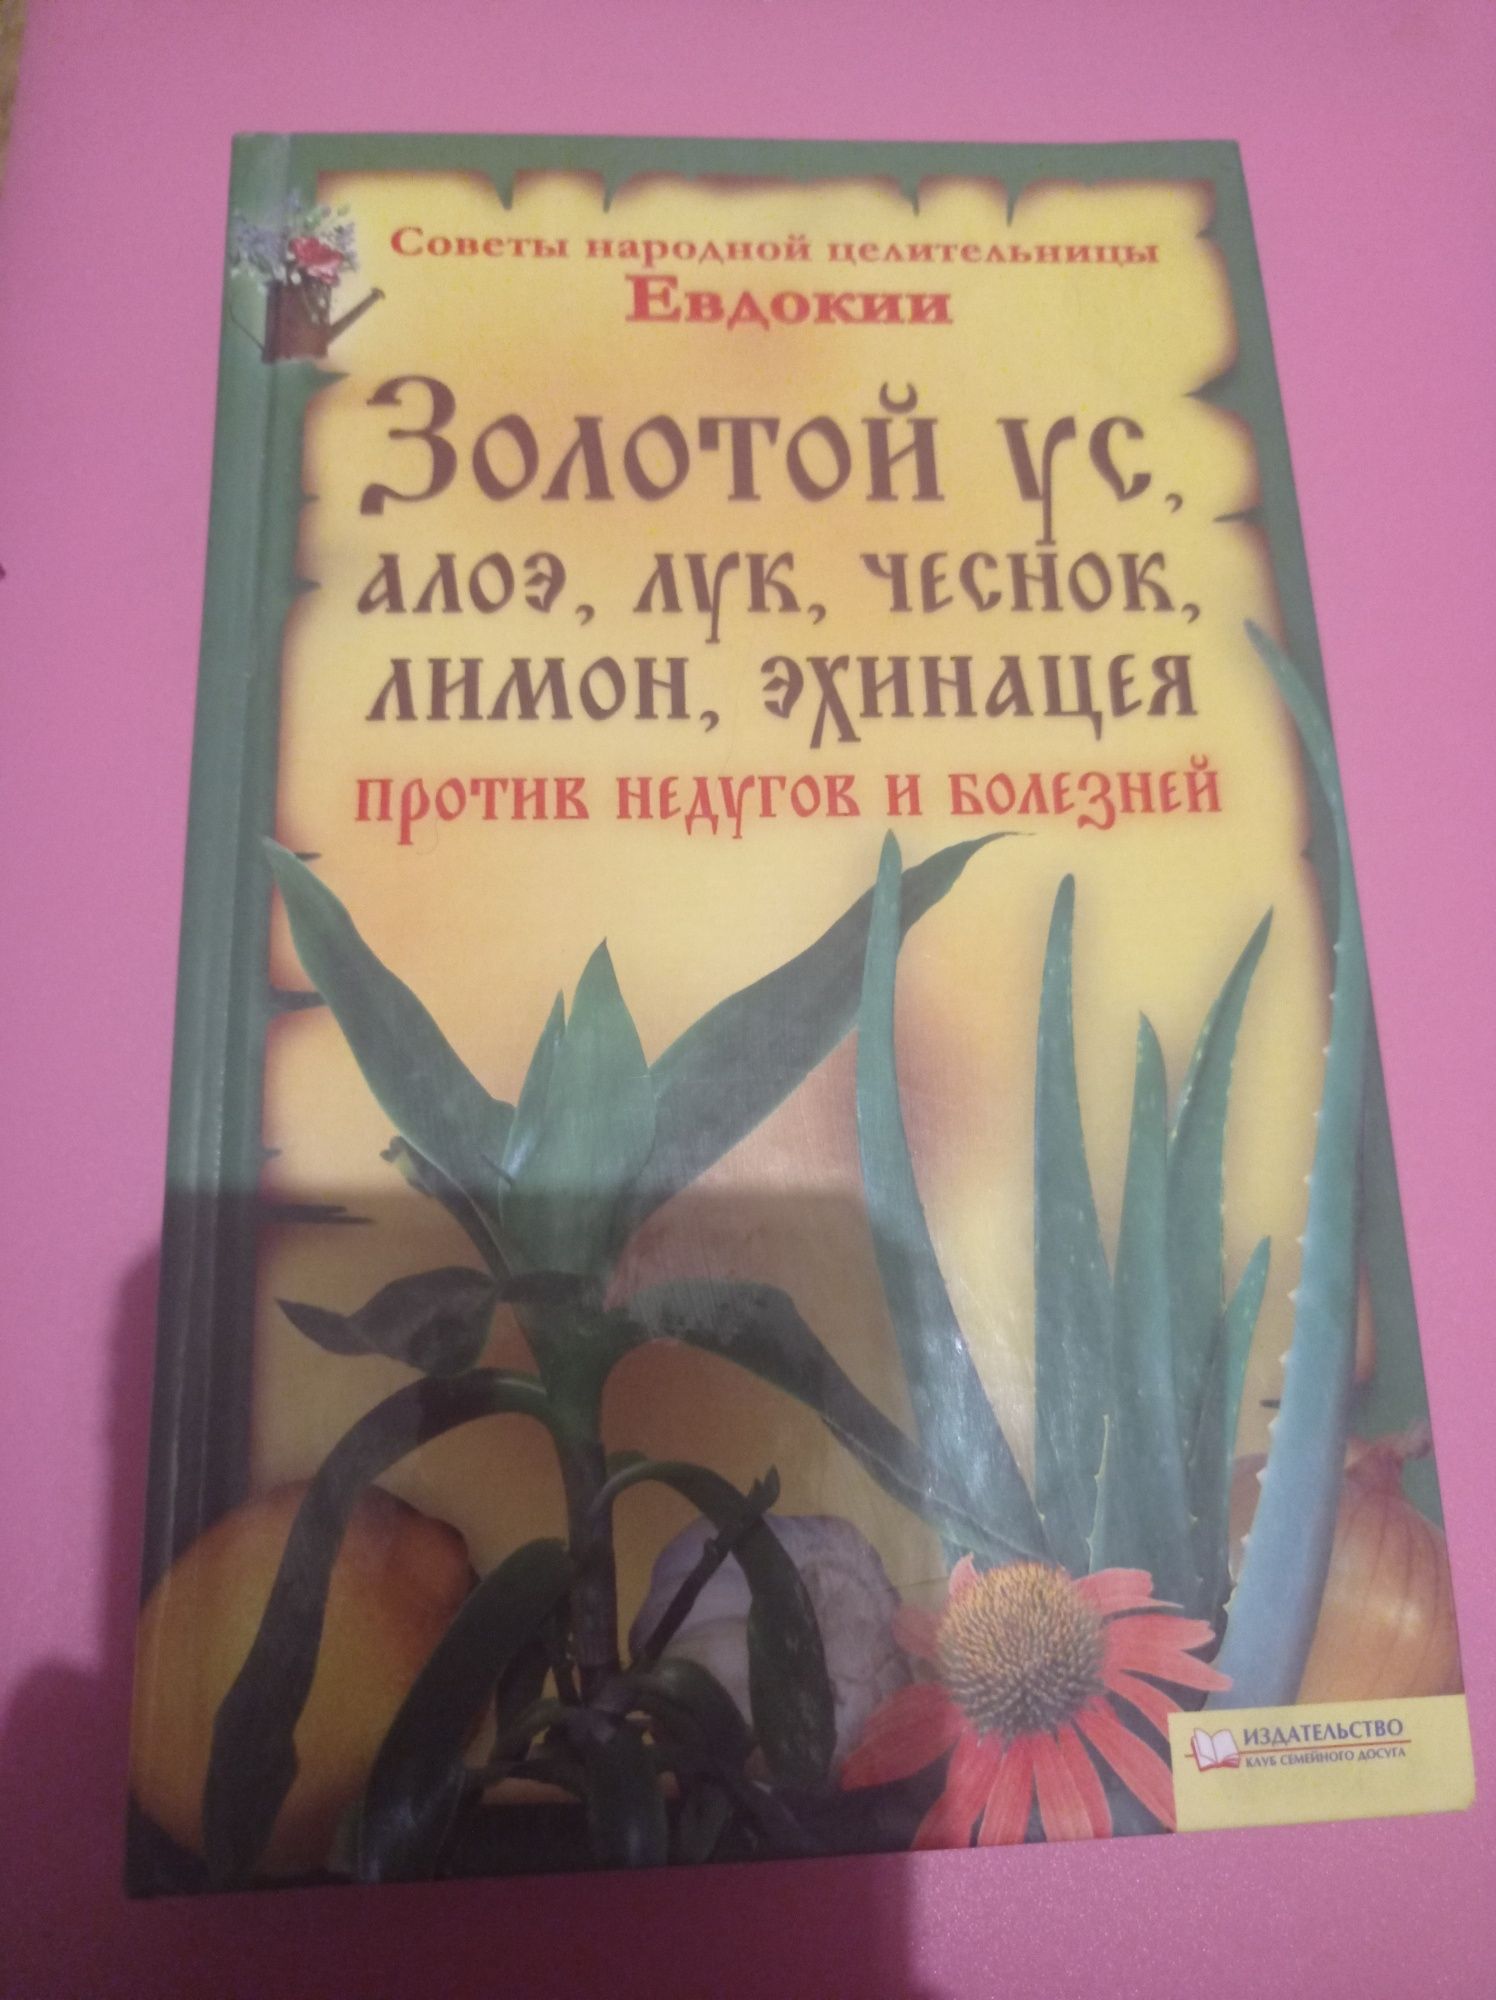 Книга "Советы народной целительницы Евдокии против недугов и болезней"